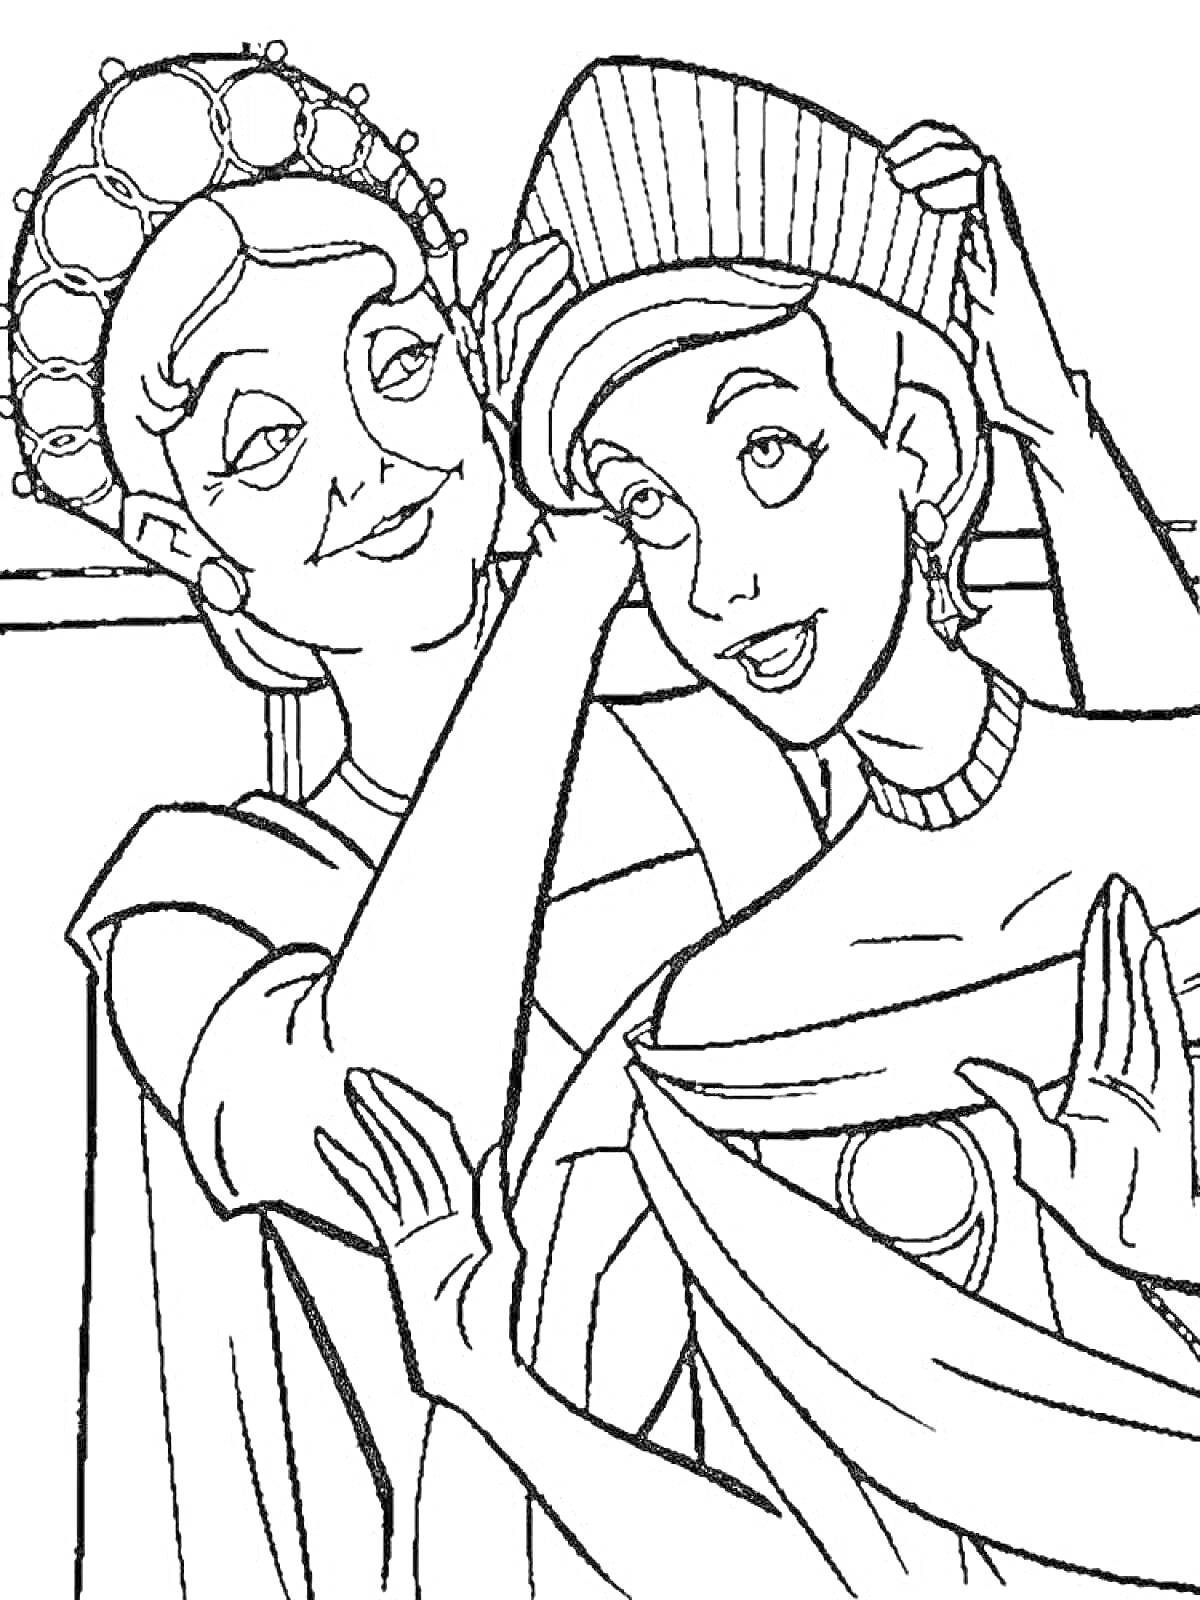 Раскраска Женщина в короне помогает девушке с ювелирным головным убором и нарядом